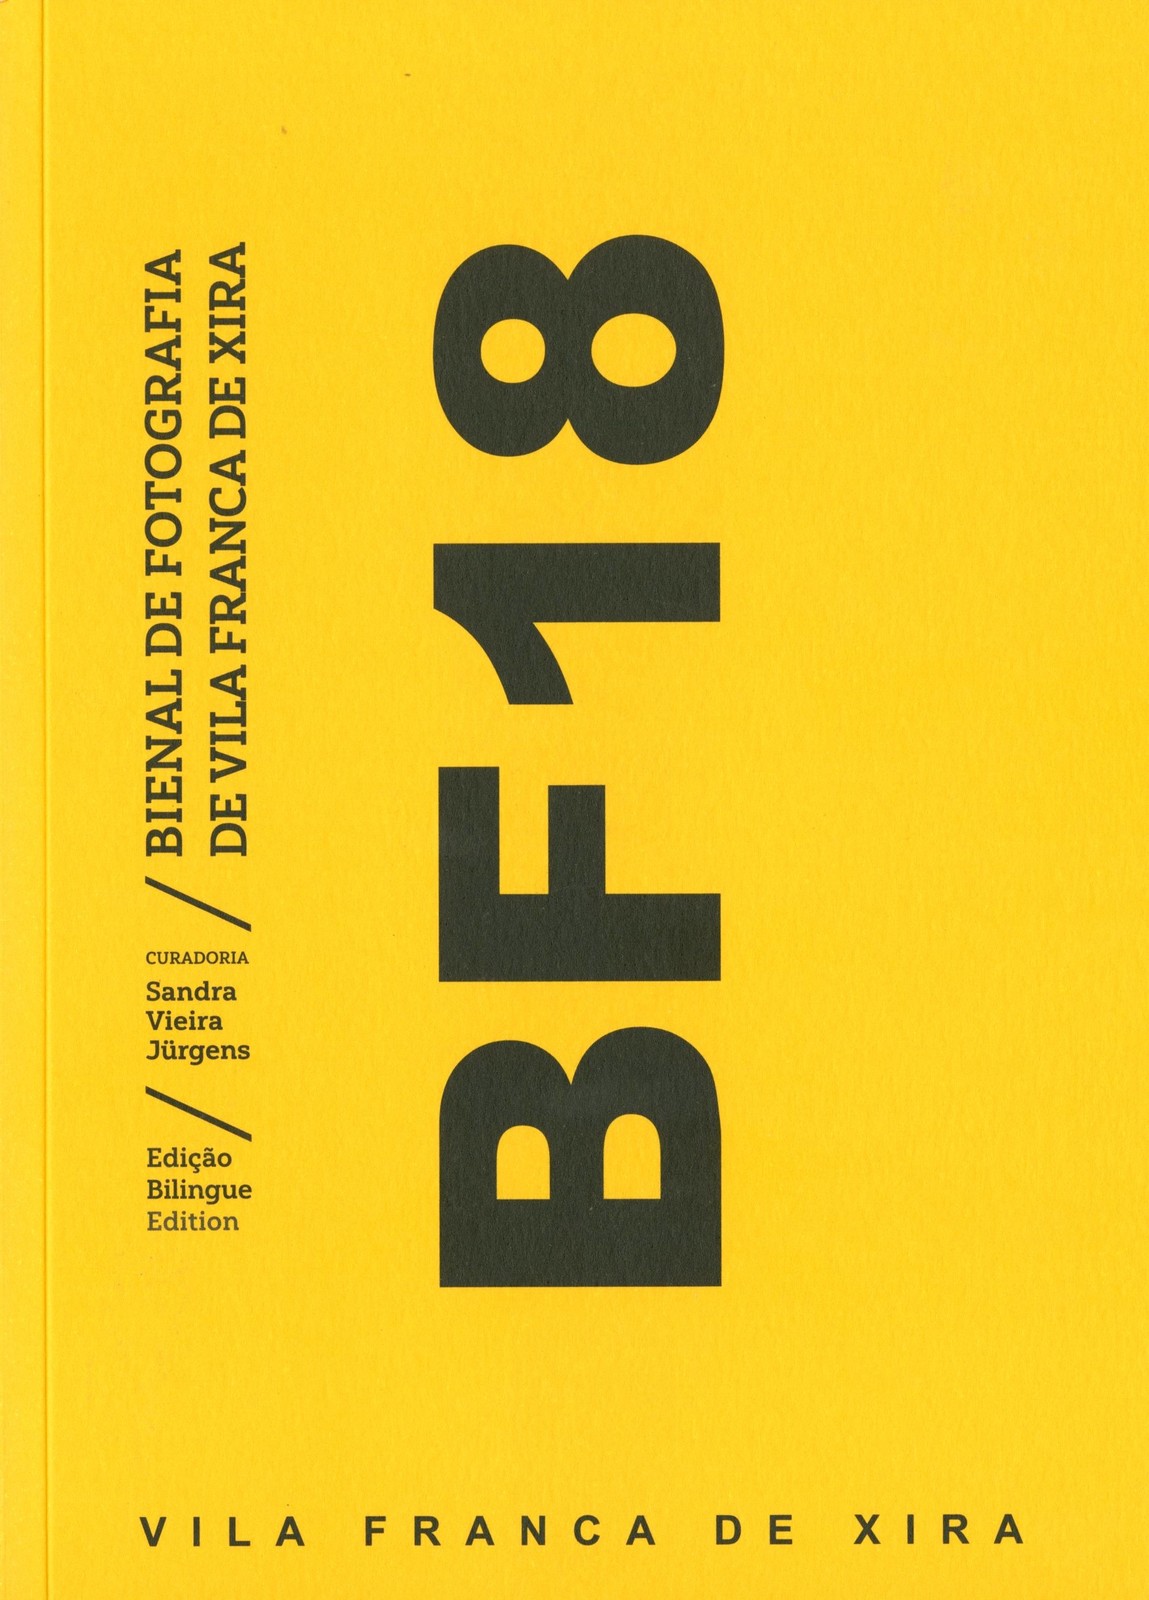 Catálogo da Exposição BF 18: Bienal de Fotografia de Vila Franca de Xira